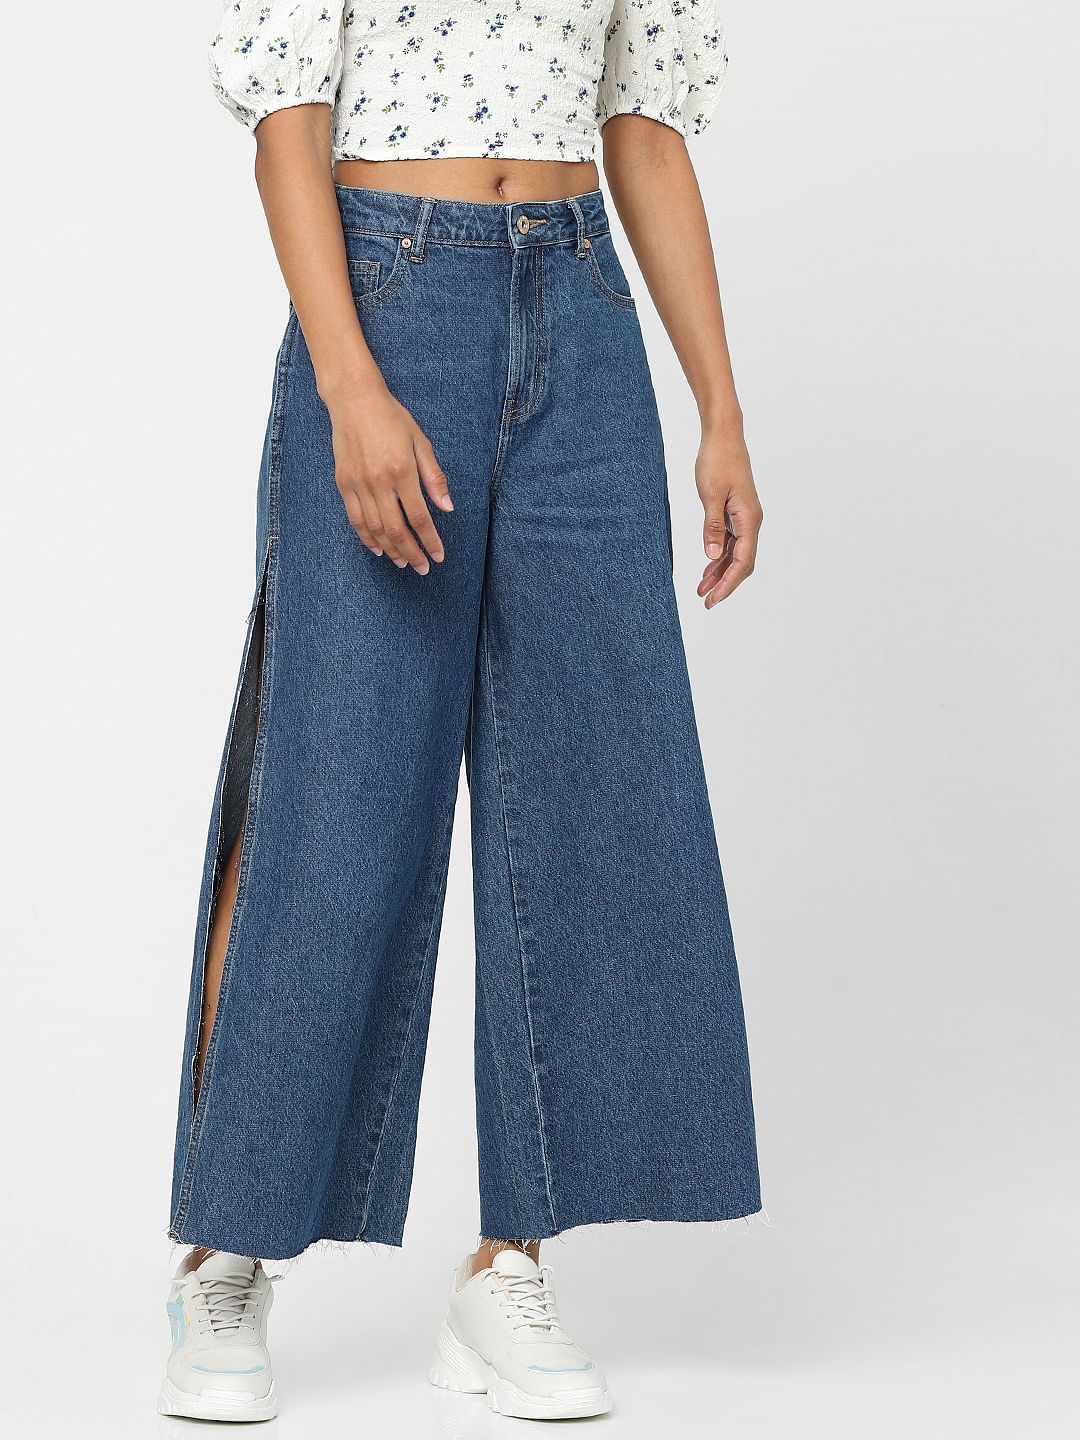 Zara boyfriend jeans discount 79% Blue 36                  EU WOMEN FASHION Jeans Boyfriend jeans Worn-in 